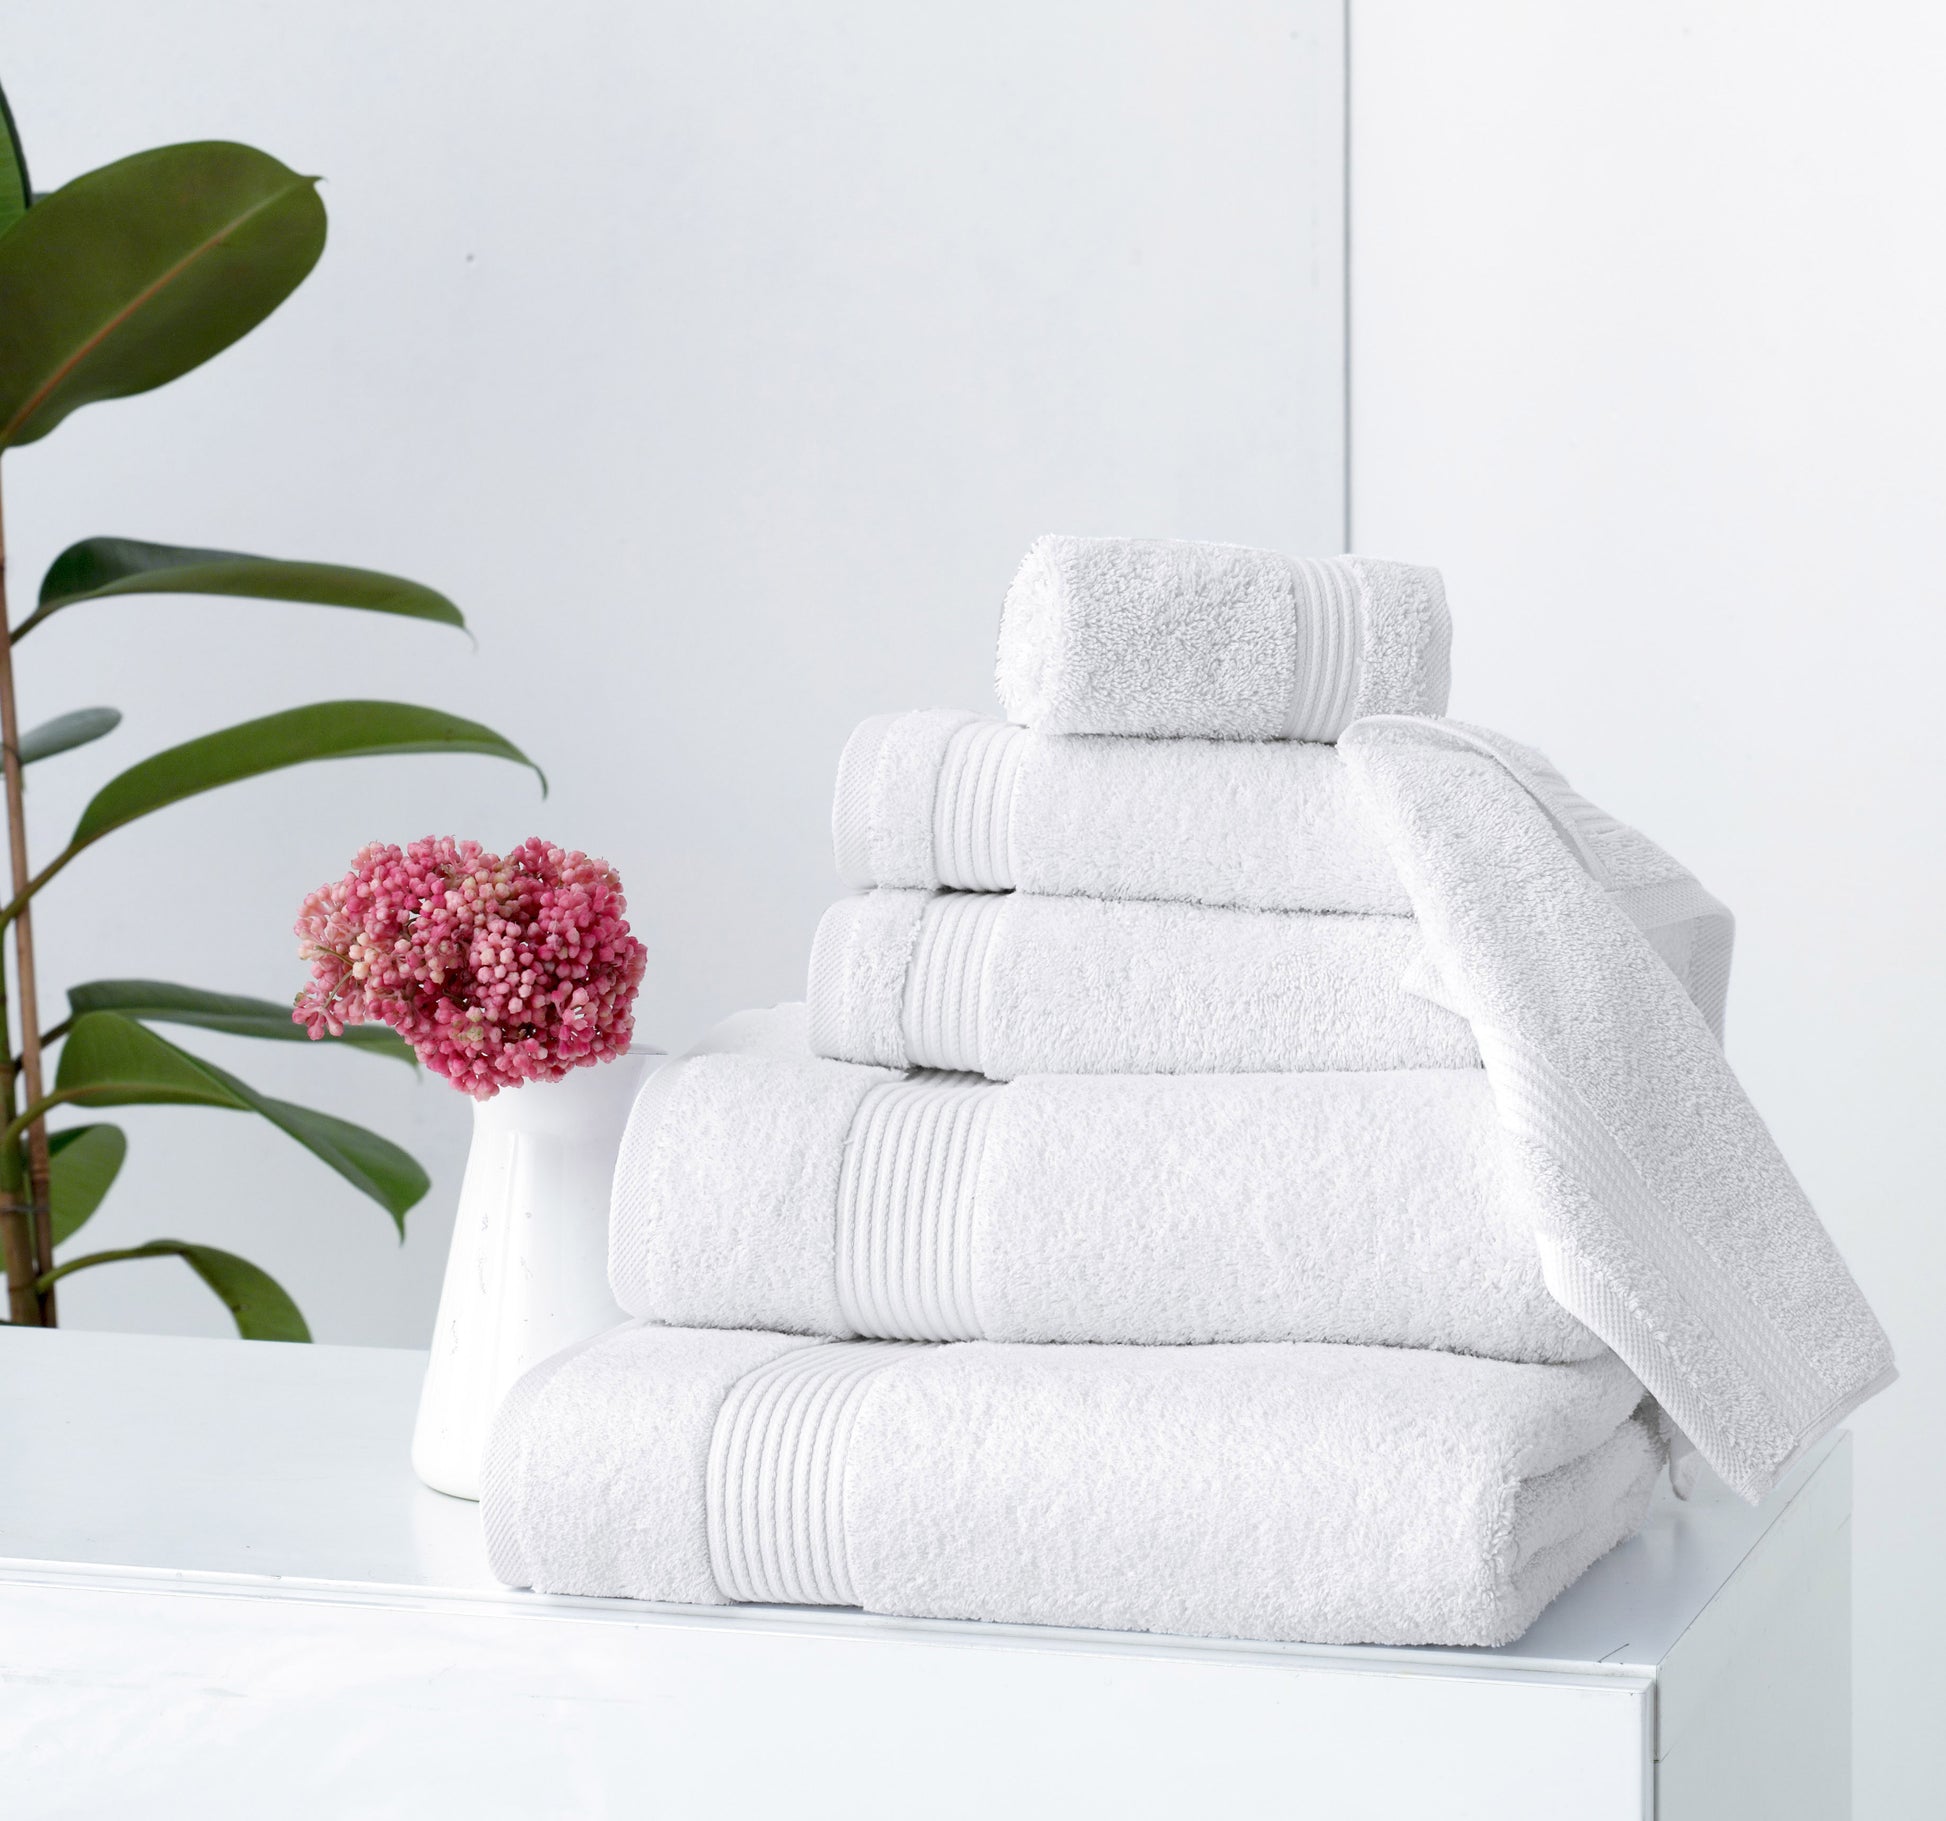 White Classic Luxury Bath Towel Set - Hotel Soft 100% Cotton Bath Towel Sets 8 Piece - 2 Bath Towels, 2 Hand Towels, 4 Washcloth, Serenity Bath Towel